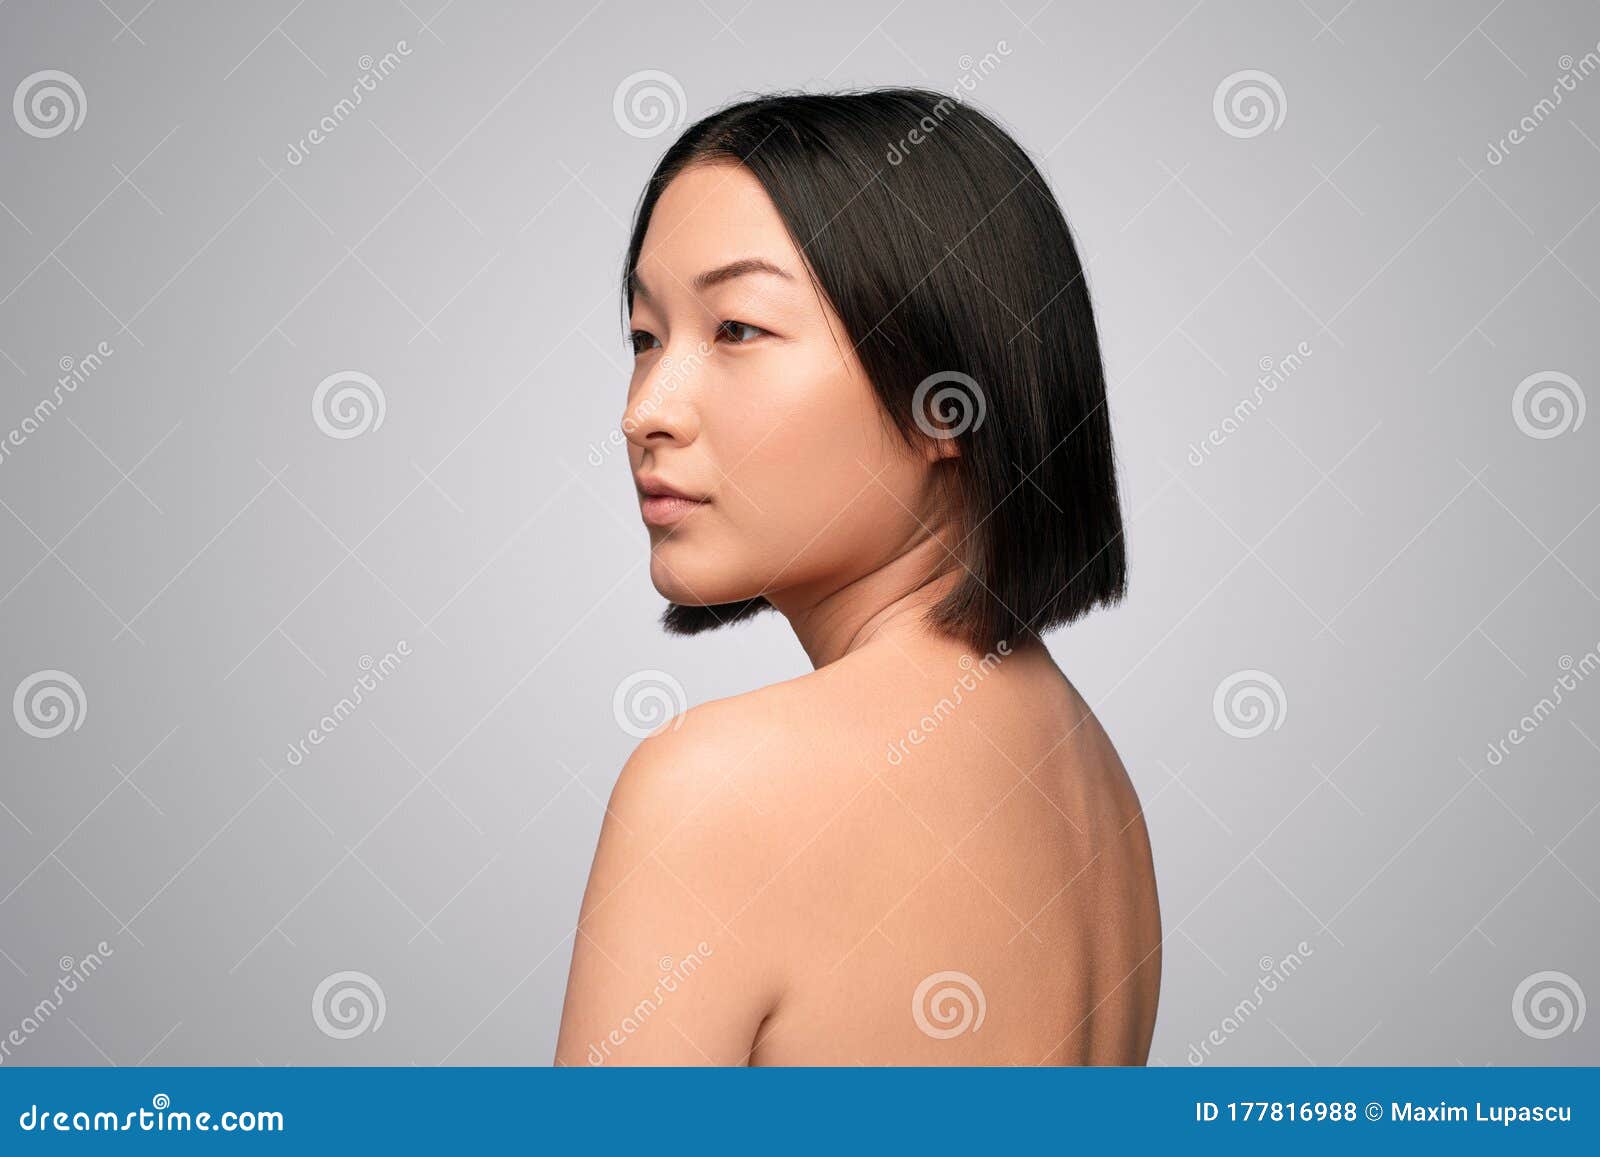 Korean Women Naked Pics